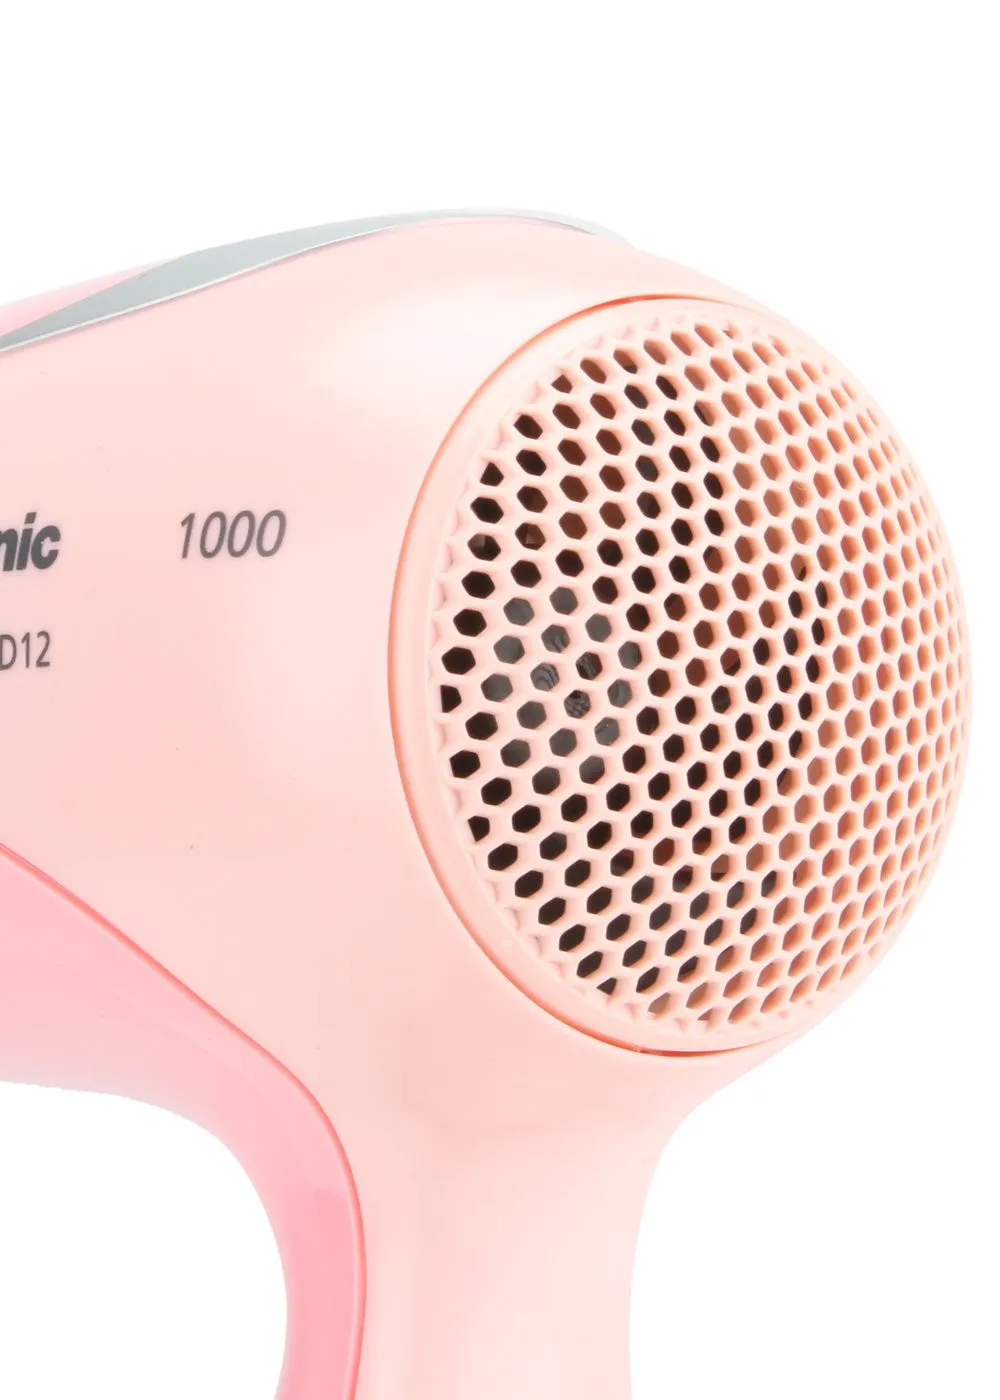 Фен Panasonic EH-ND12 охлаждением воздуха и режимом Turbo Dry(Розовый)#2